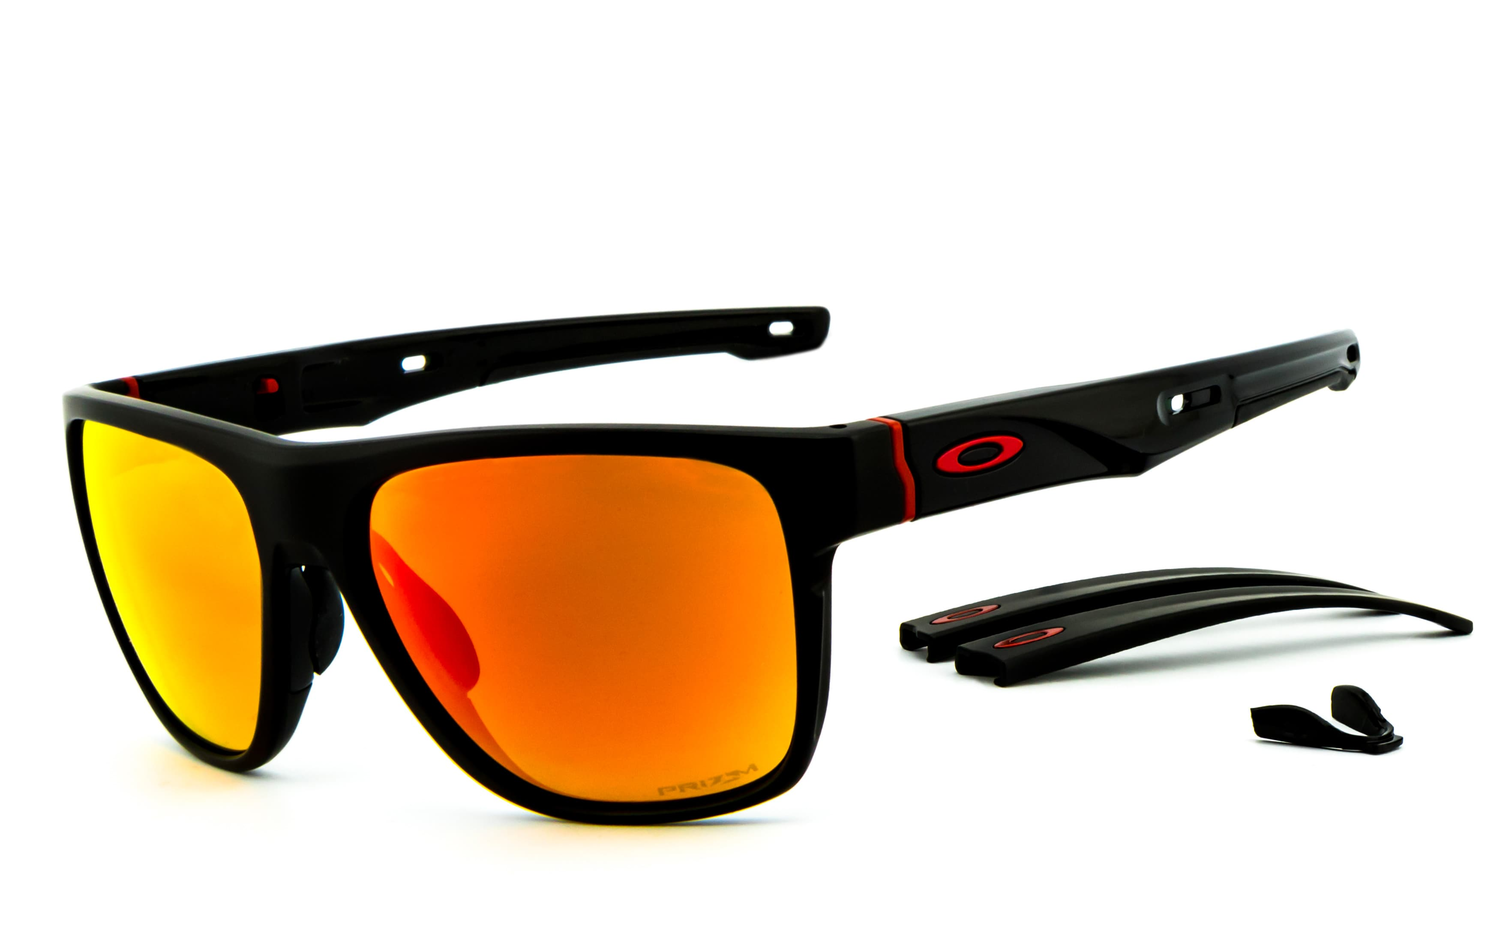 OAKLEY | Crossrange XL - OO9360  Sportbrille, Fahrradbrille, Sonnenbrille, Bikerbrille, Radbrille, UV400 Schutzfilter